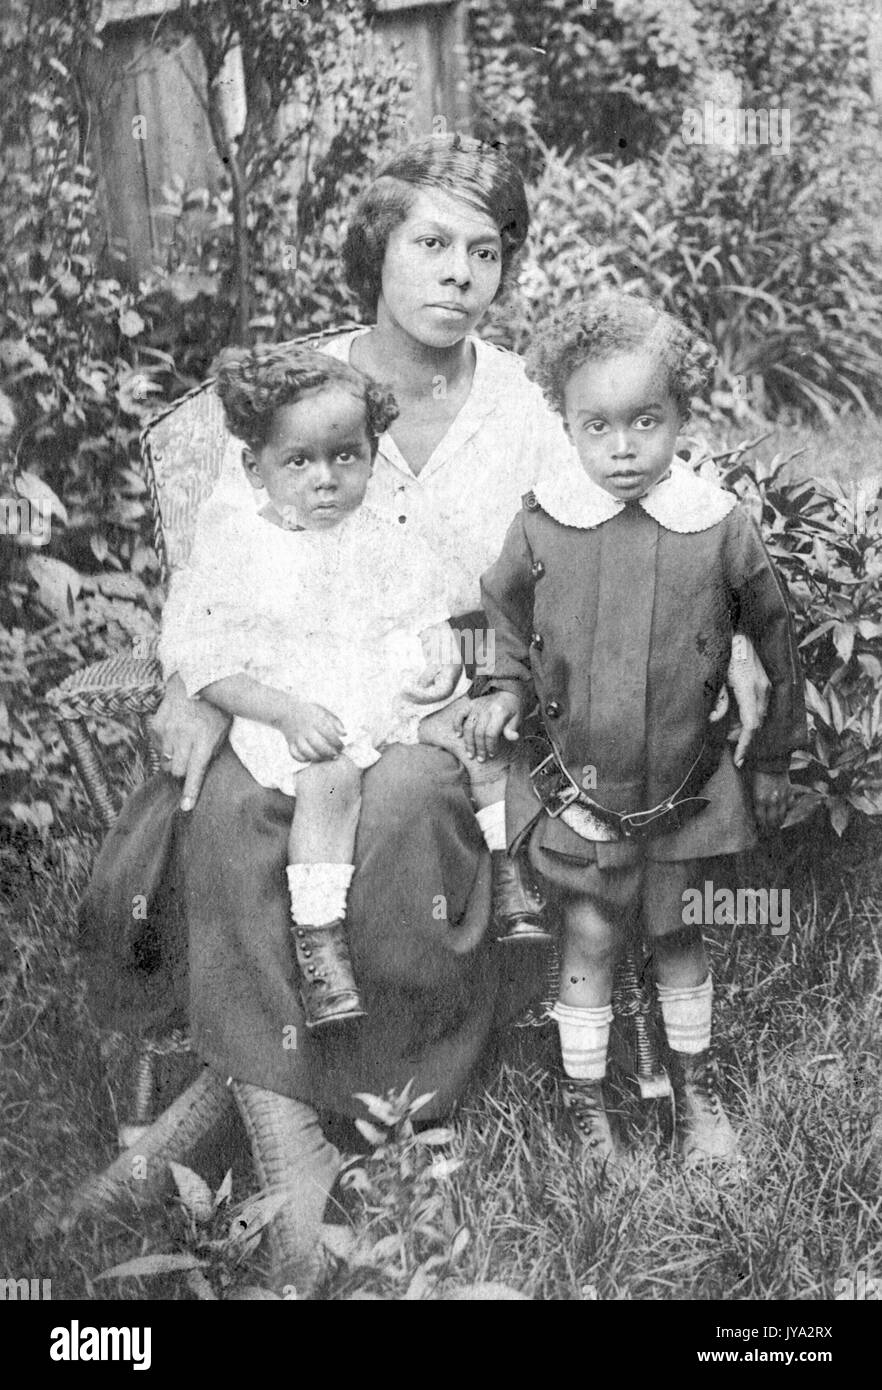 Afrikaner - Mutter und Kinder für ein Foto posieren, die Mutter in einem korbsessel sitzen, ihre junge Tochter sitzen auf Ihrem Schoß, ihrem Sohn, neben ihr stand und tragen ein loser Riemen, alle mit leeren Mimik, Kinder im Alter von 2 und 8, 1910. Stockfoto